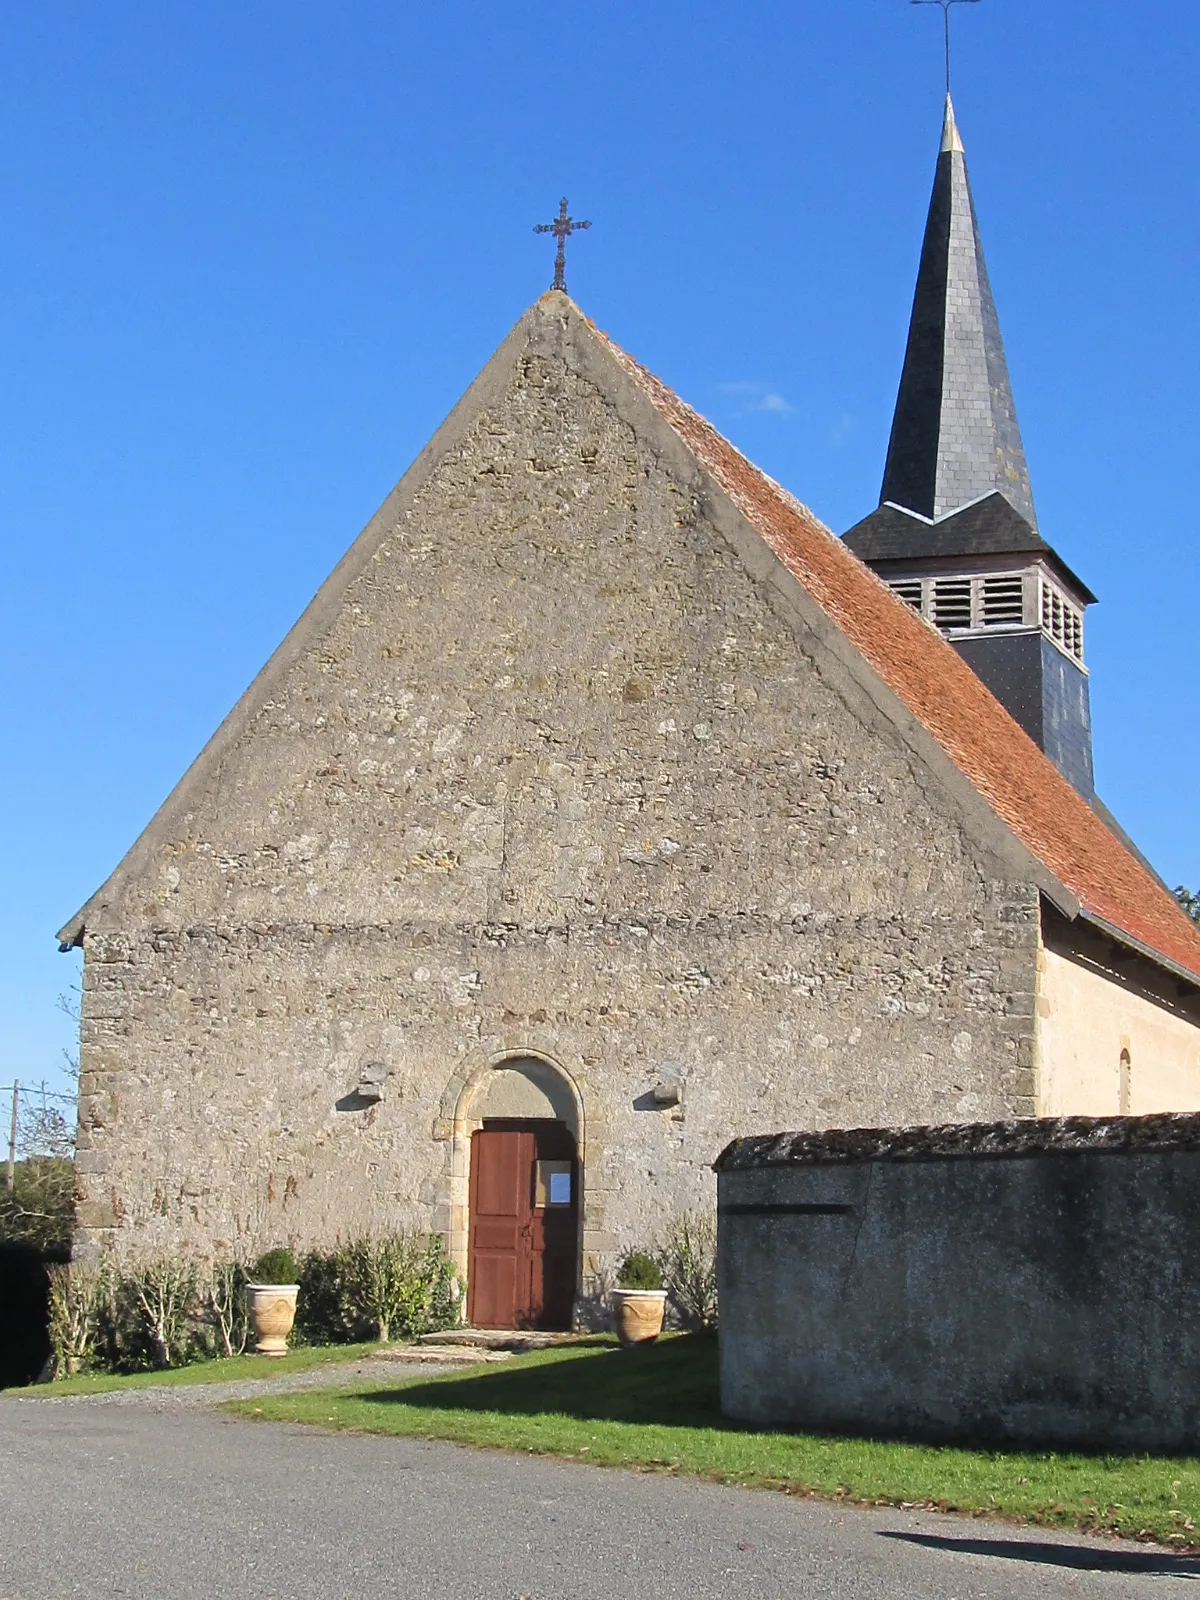 Photo showing: Vue de la commune de Thaix, avec sa Mairie, son église, ses paysages